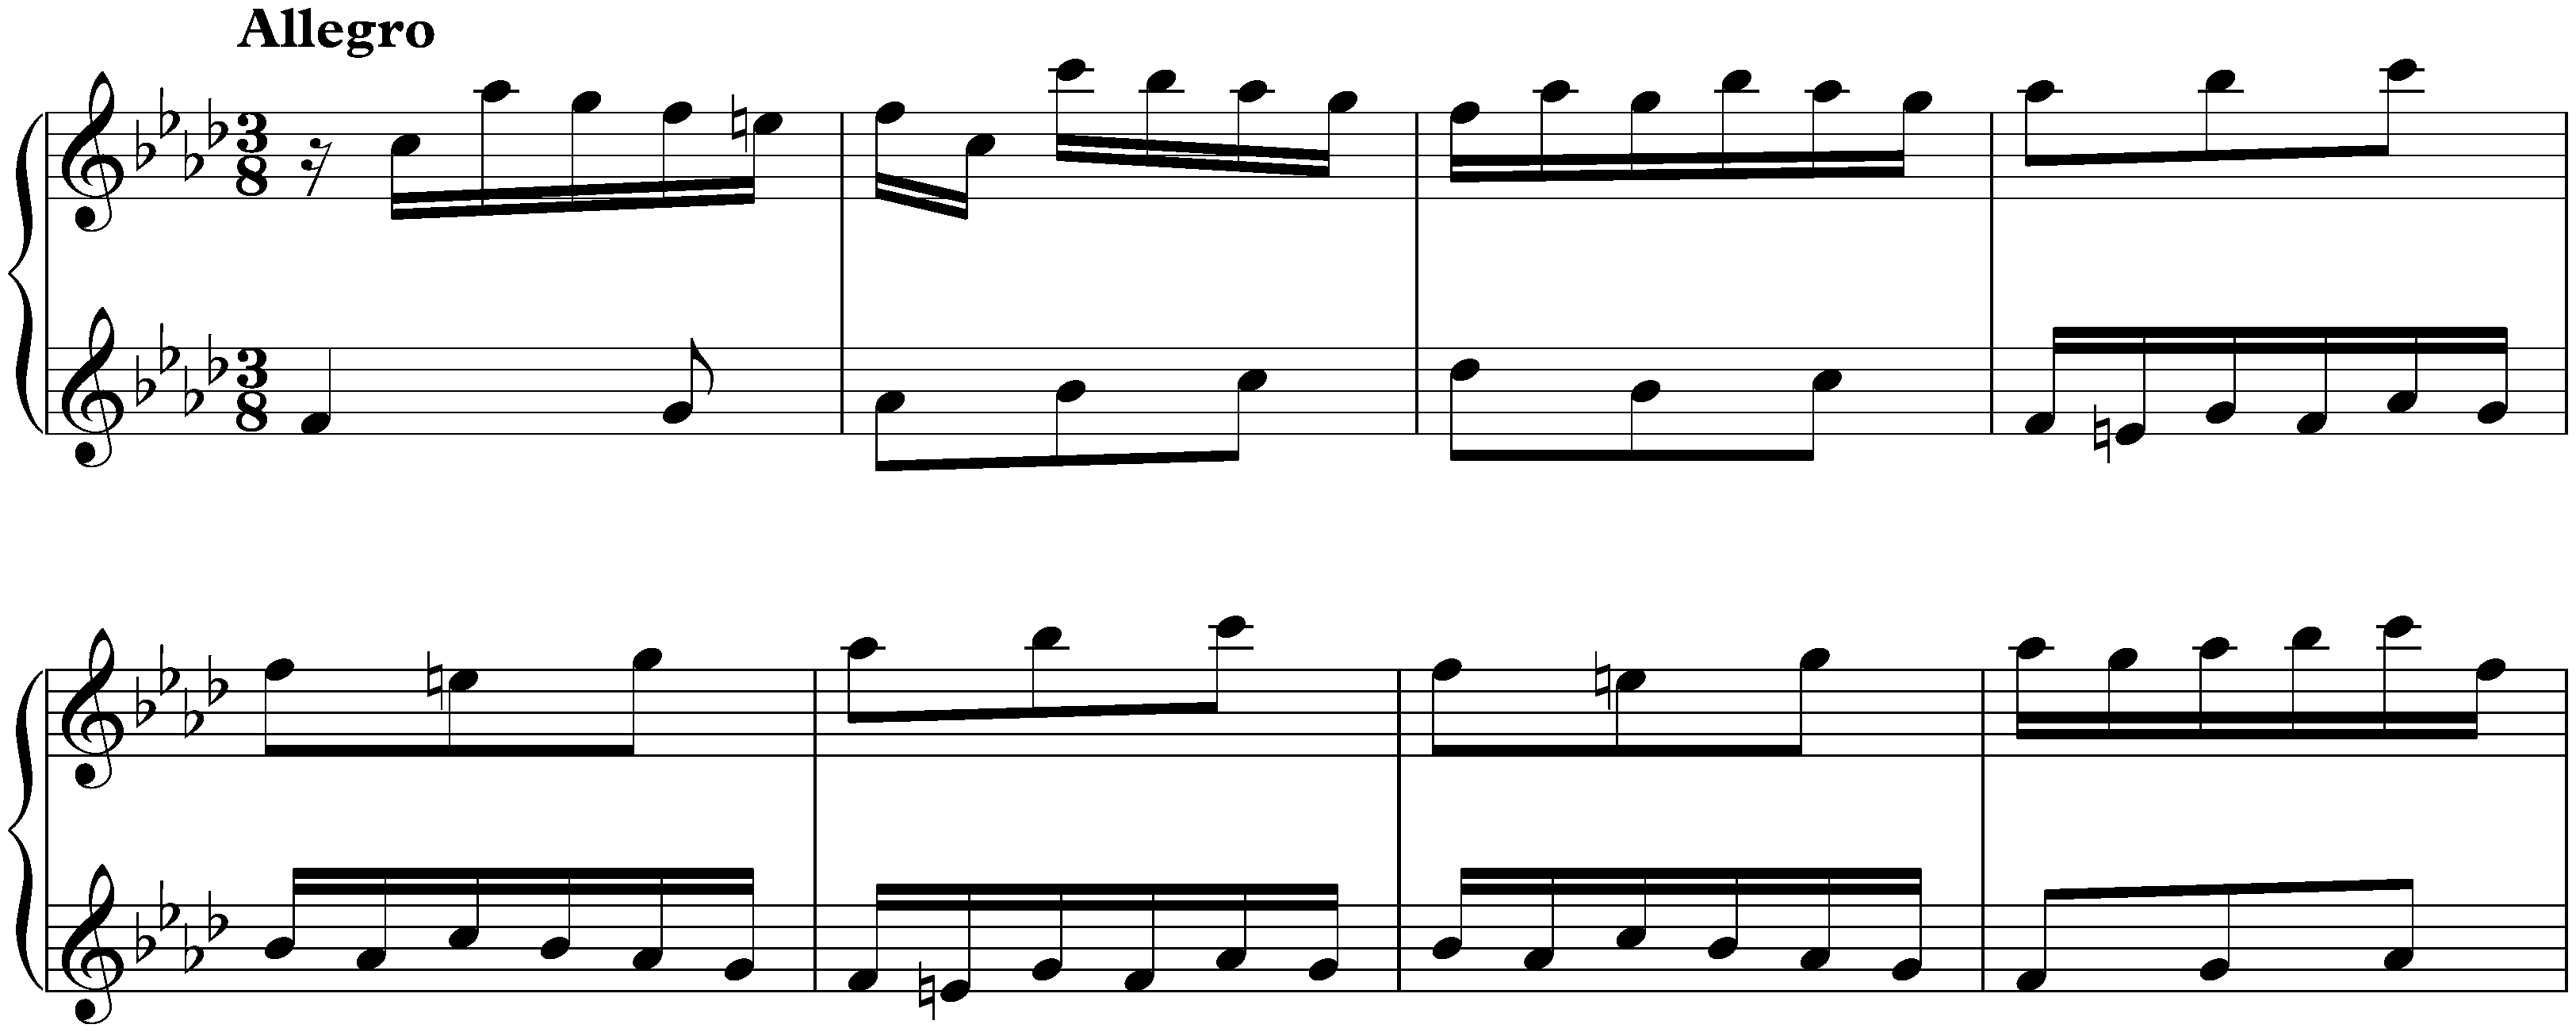 Sonata in F minor, K. 365